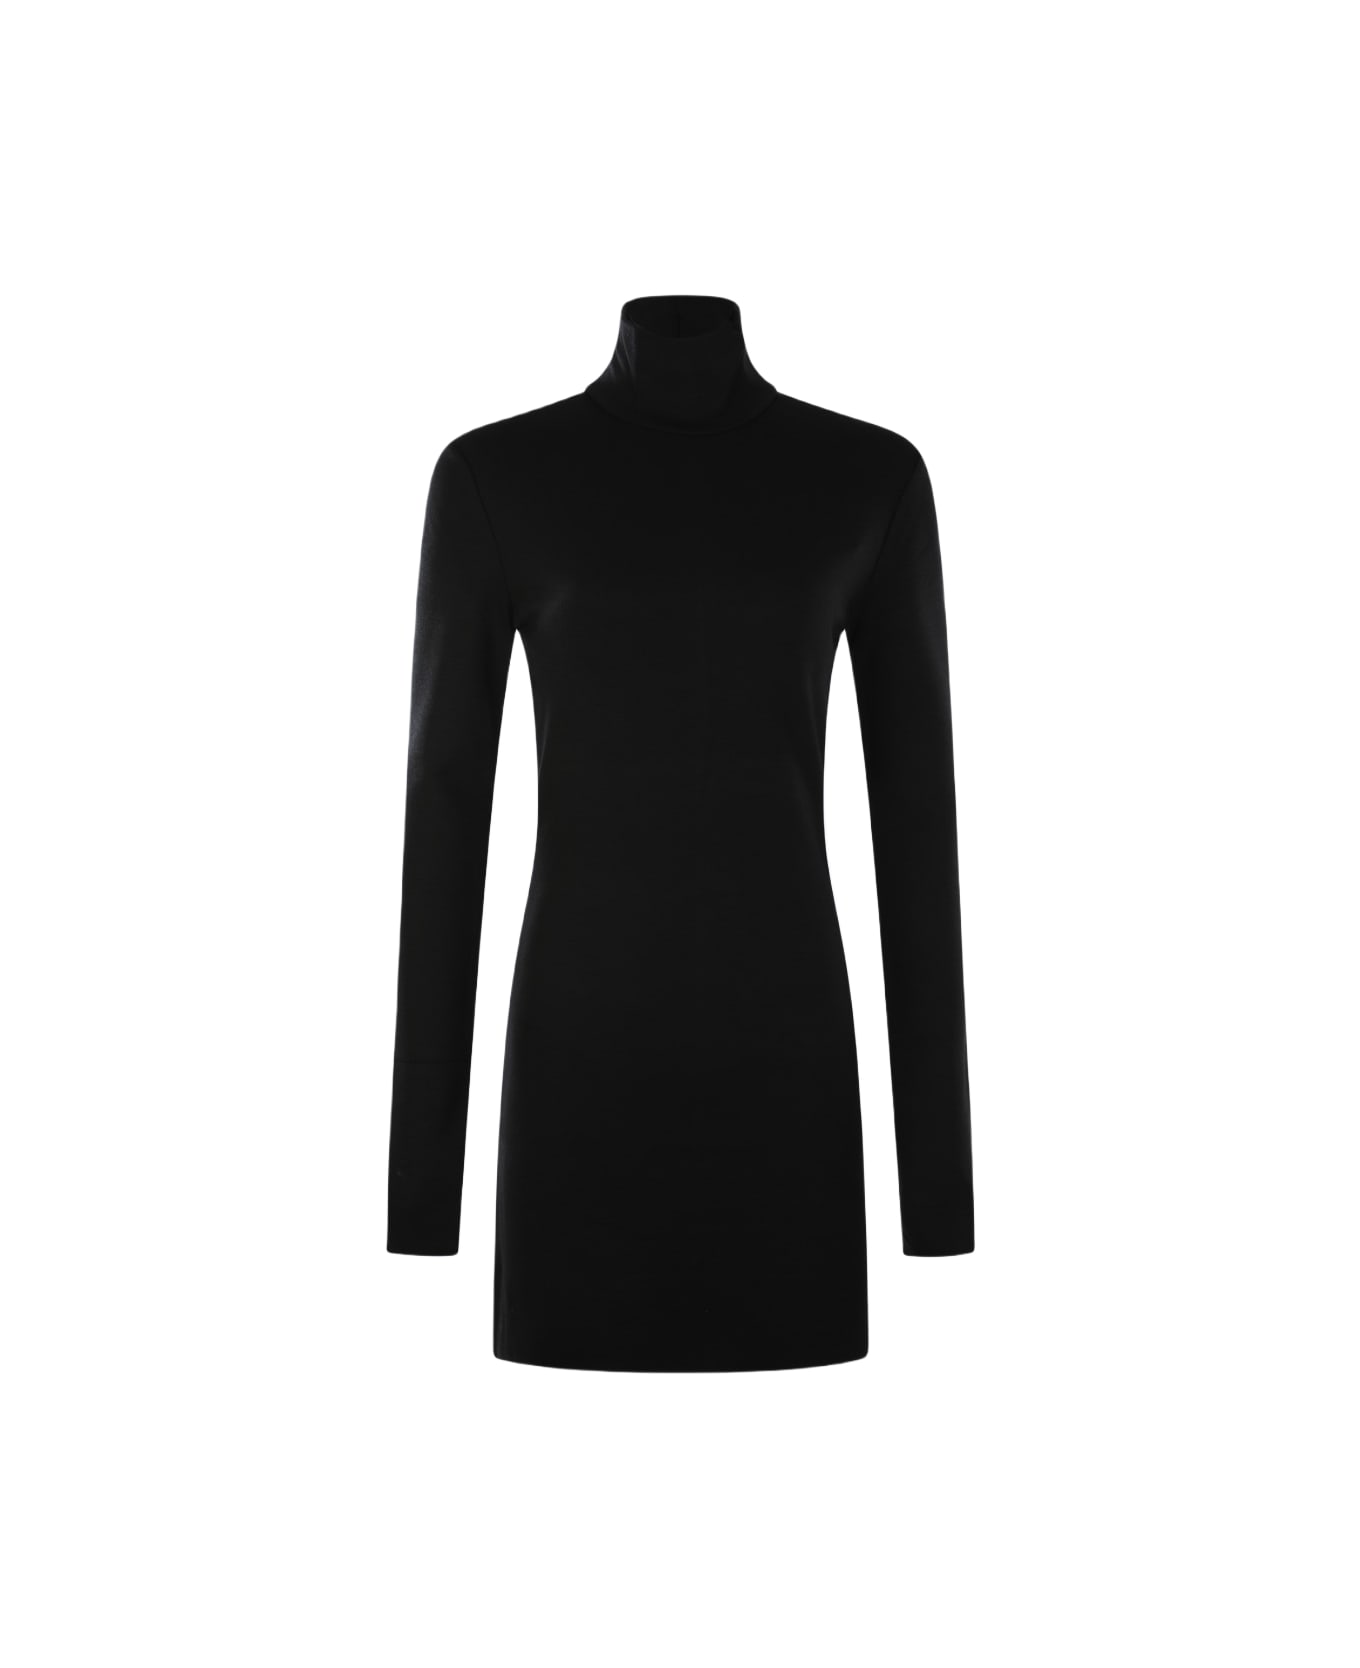 Ami Alexandre Mattiussi Black Wool Dress - Black